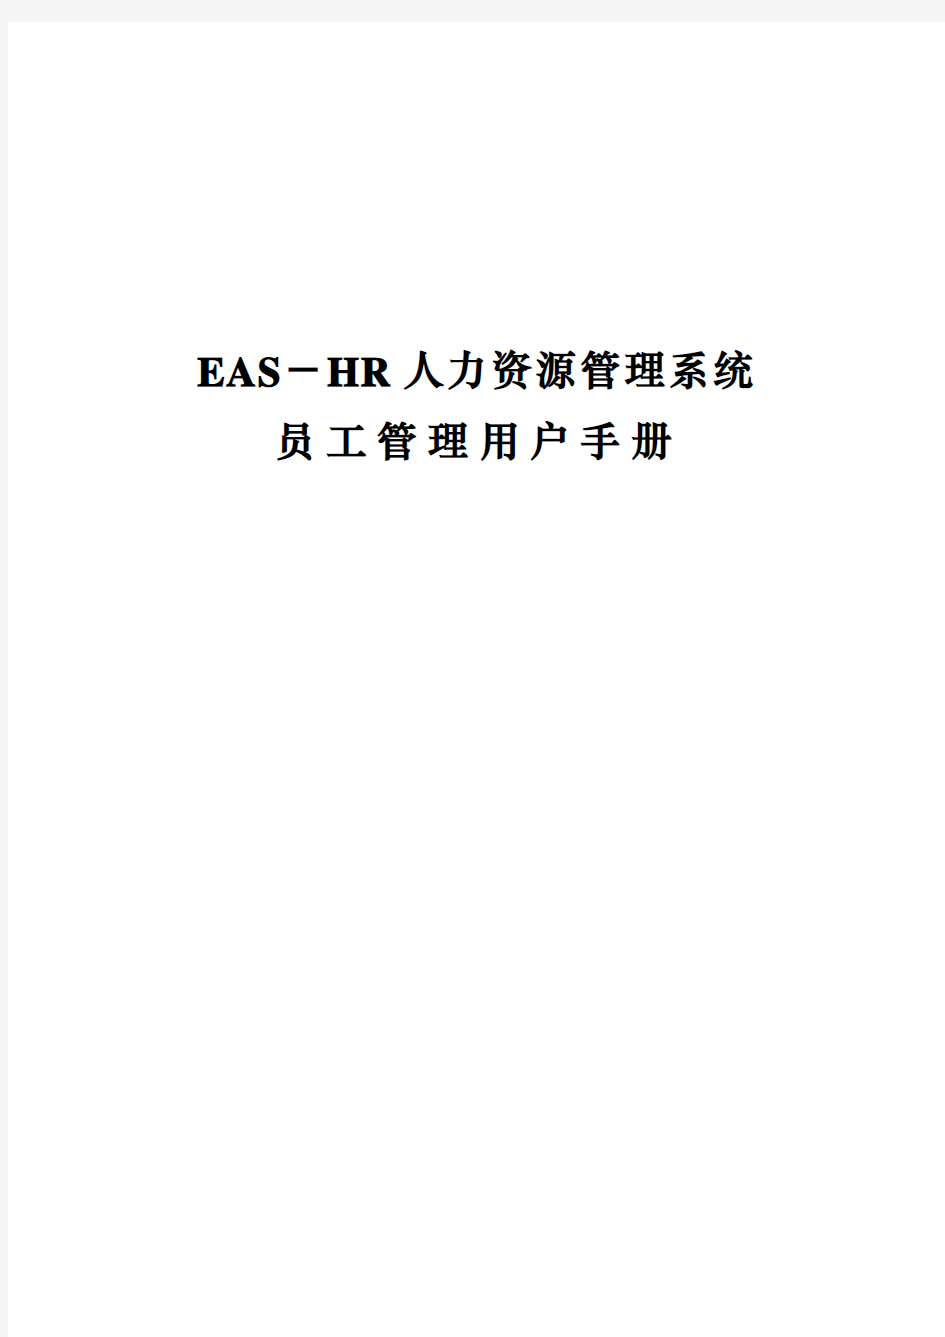 企业管理手册EASHR系统用户操作手册员工管理V